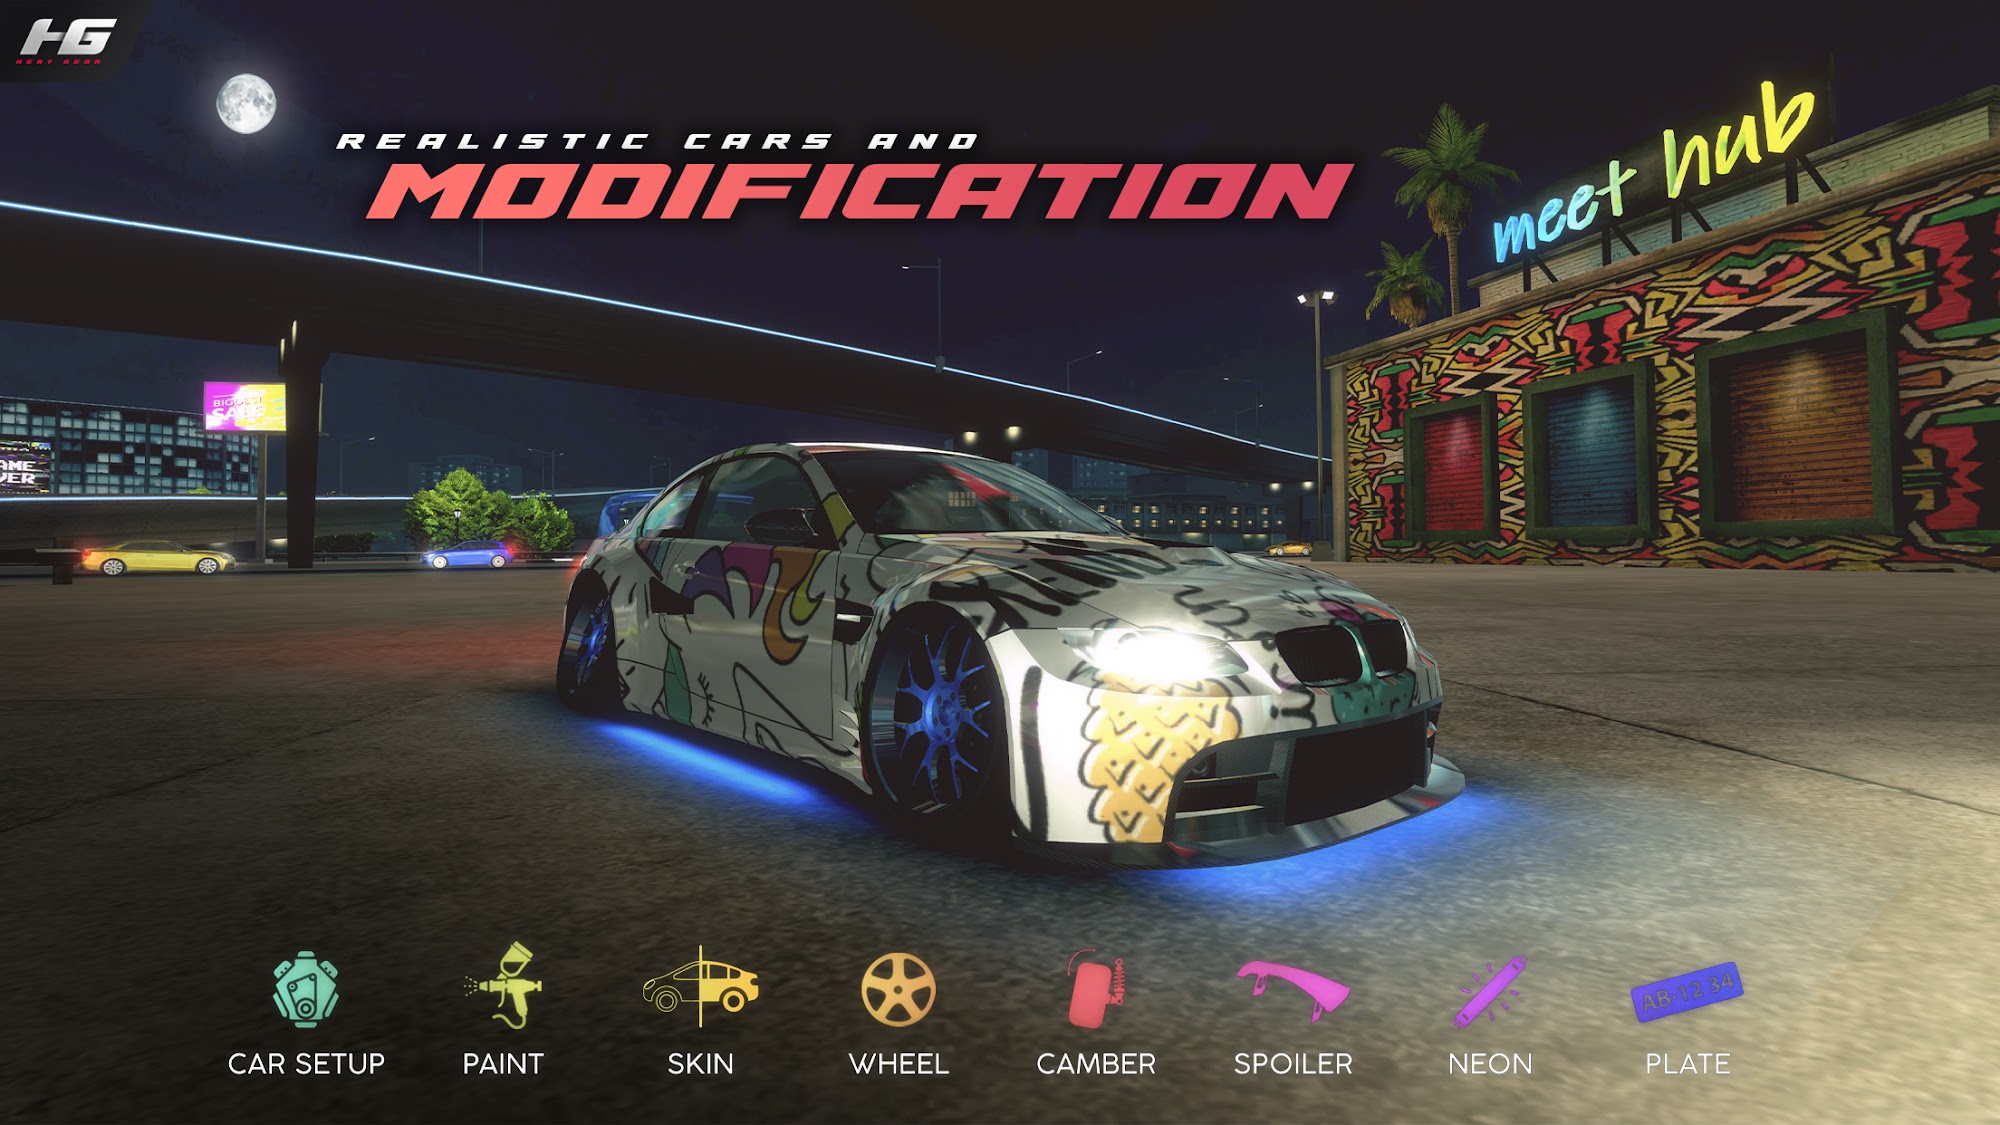 Heat Gear - Race & Drift World - Android game screenshots.